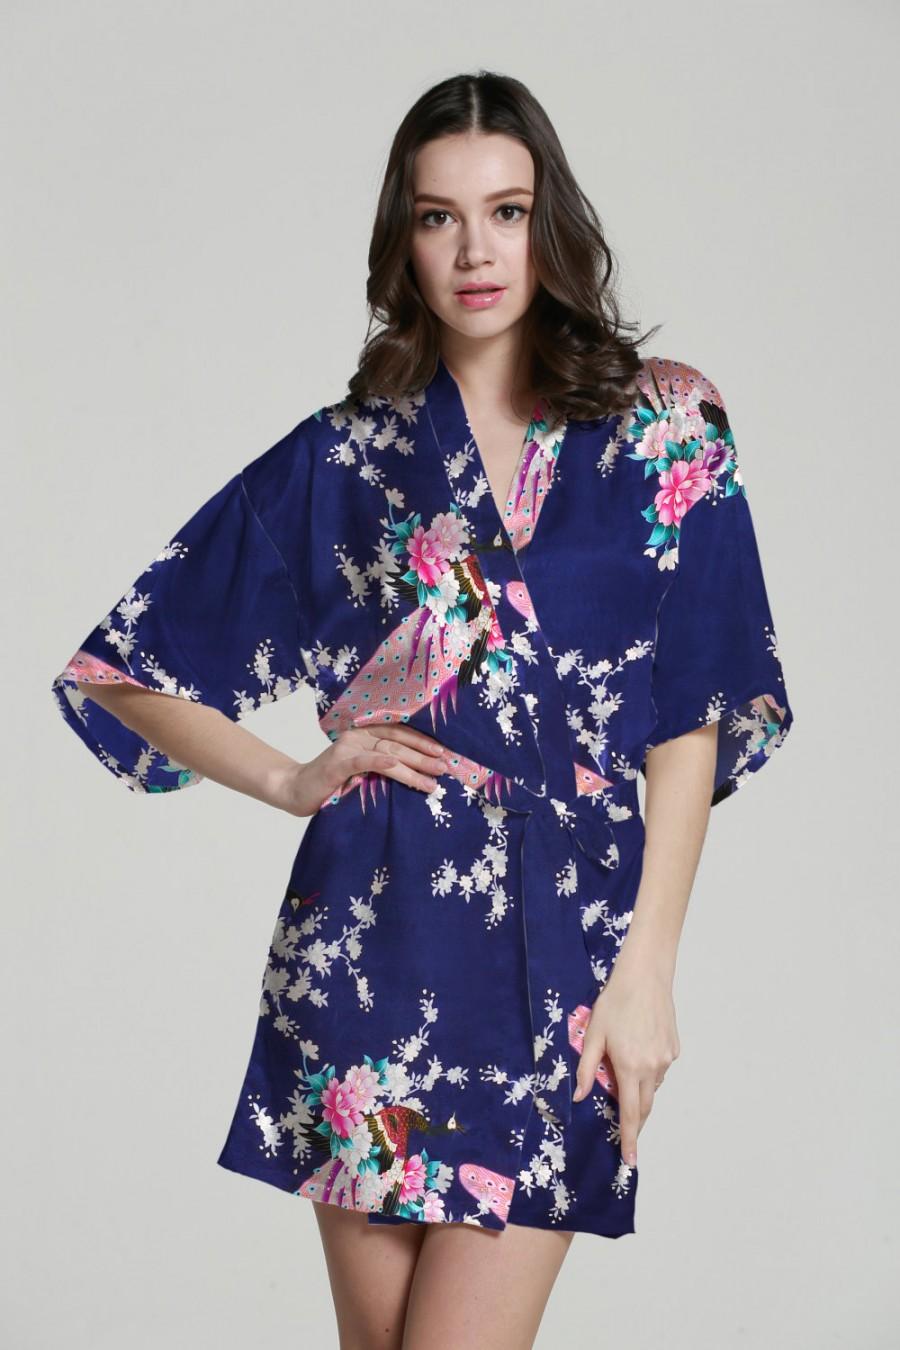 زفاف - Baby kimono robe kimono maxi dress silk kimono dressing gown satin kimono robe japanese kimono bathrobes wedding party gift idea bathrobe